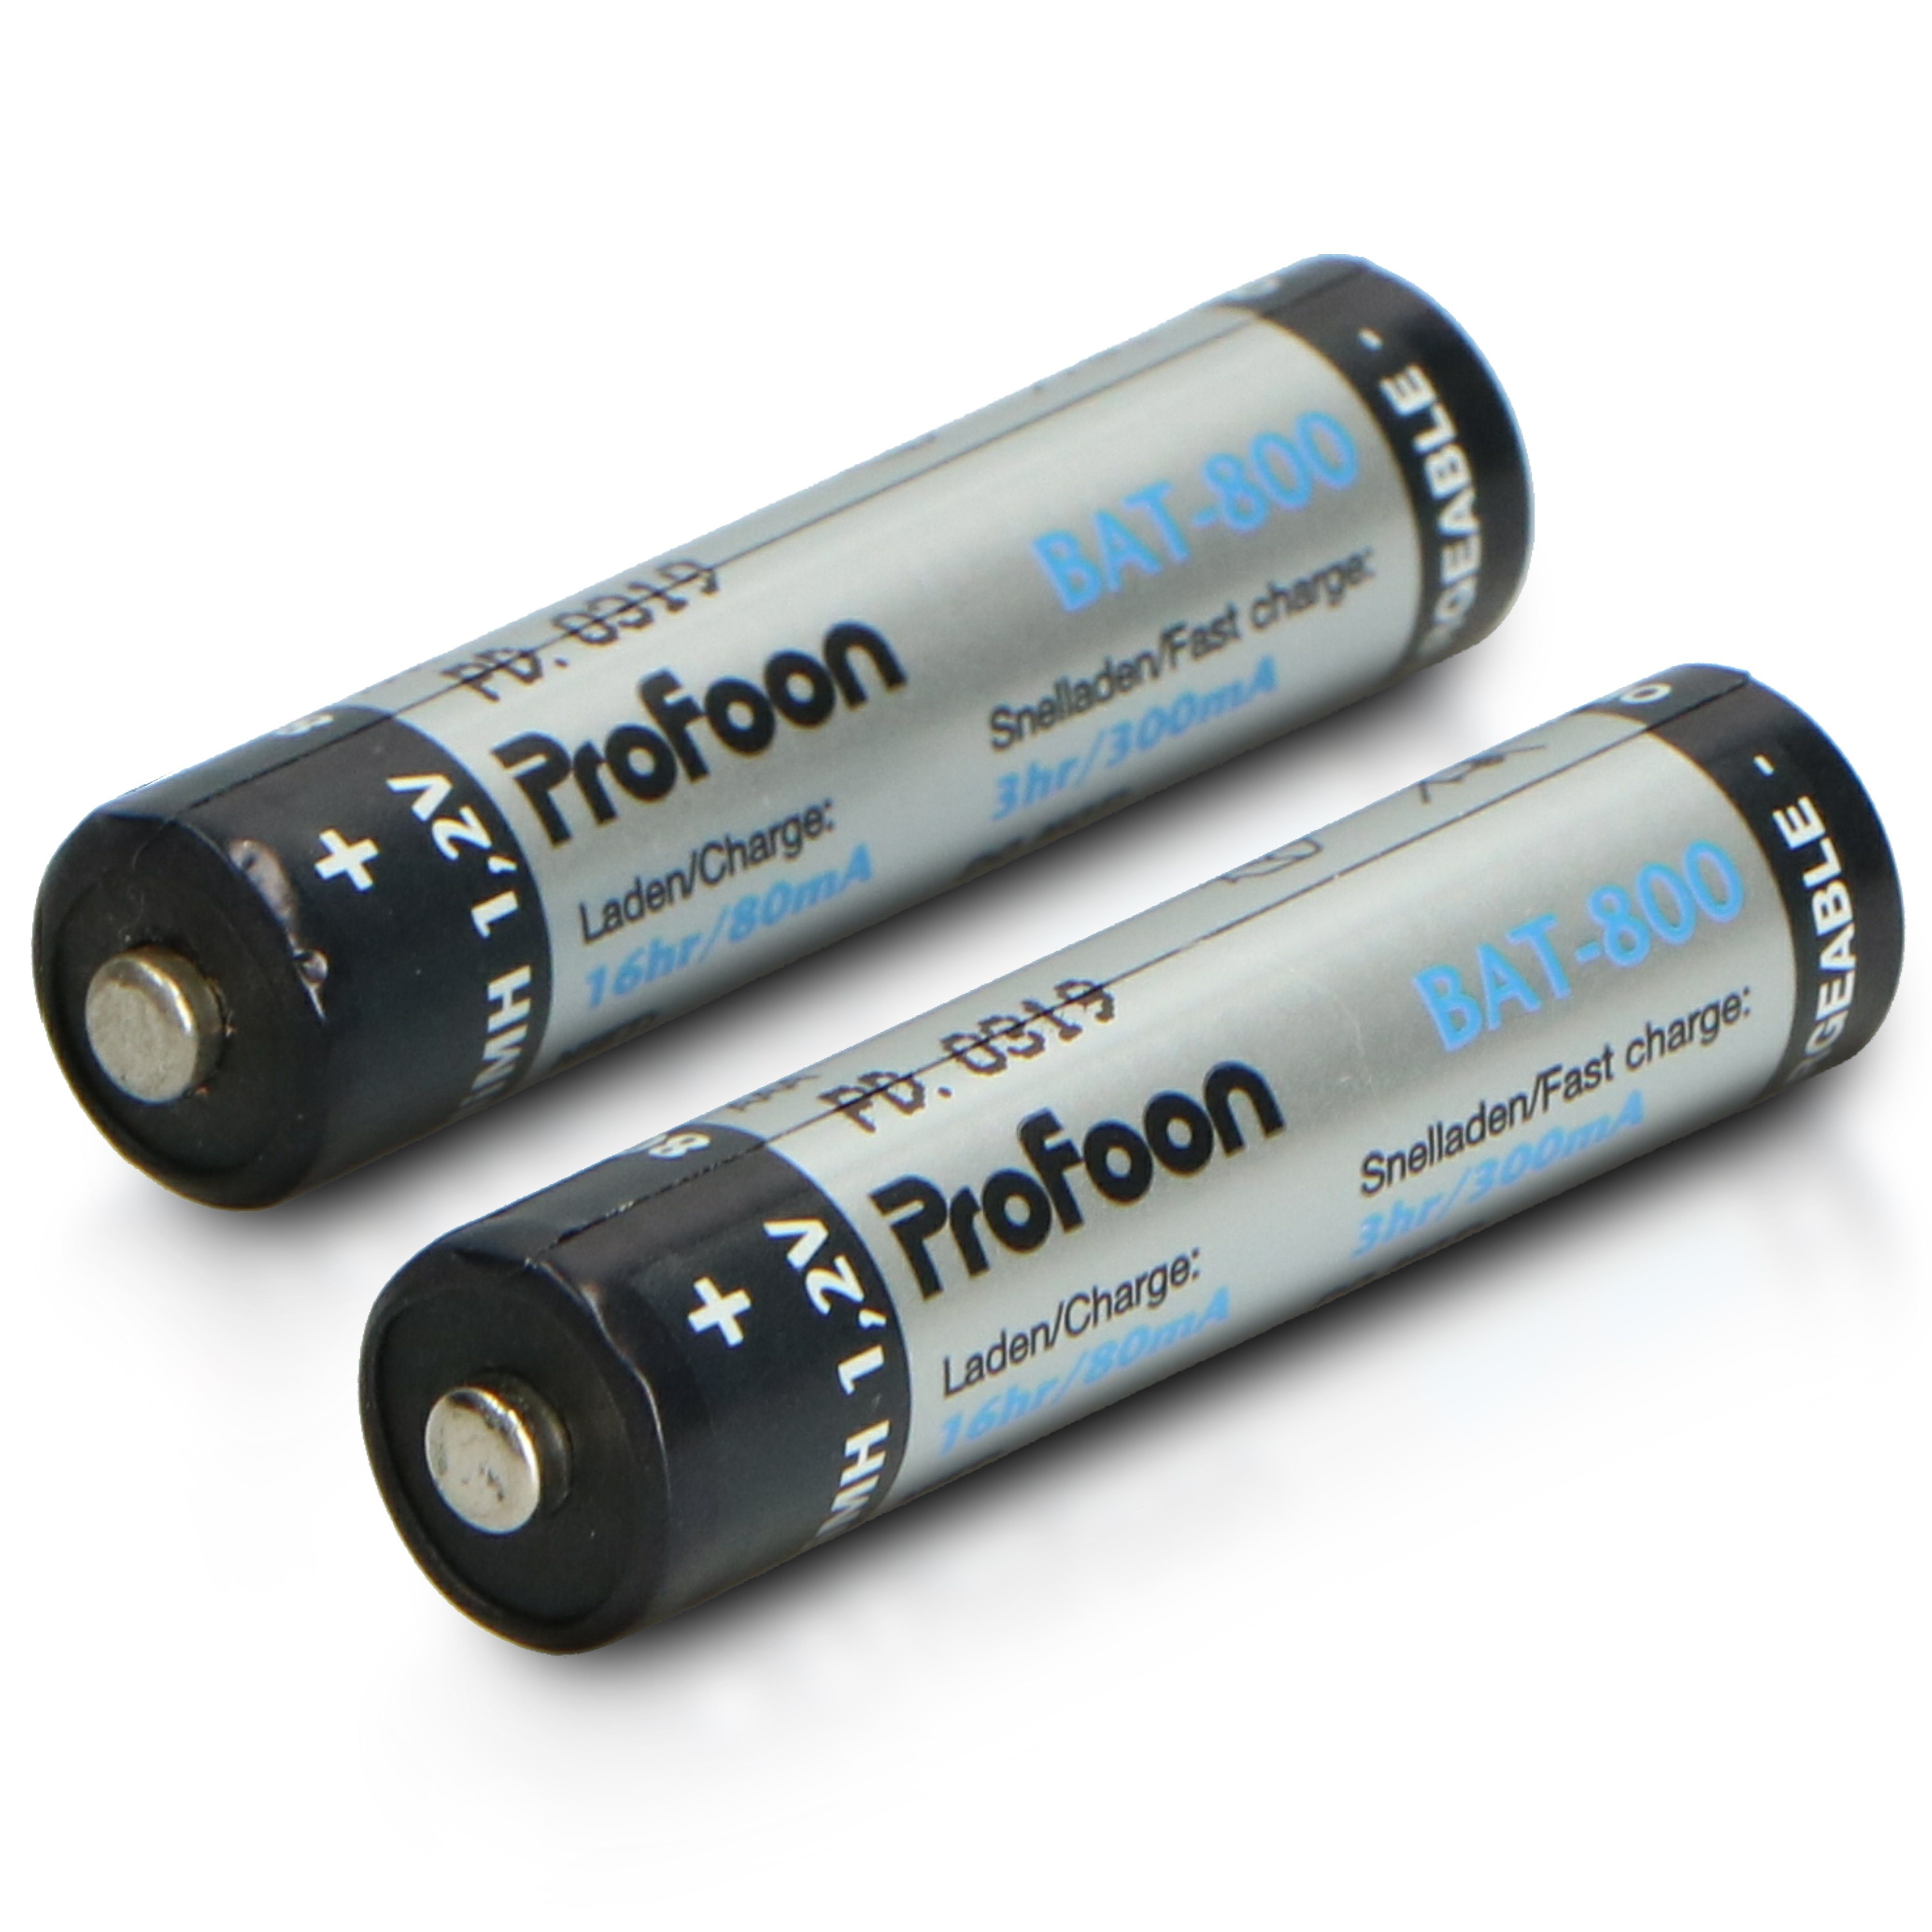 BAT-800 Batterie, St) Profoon (2